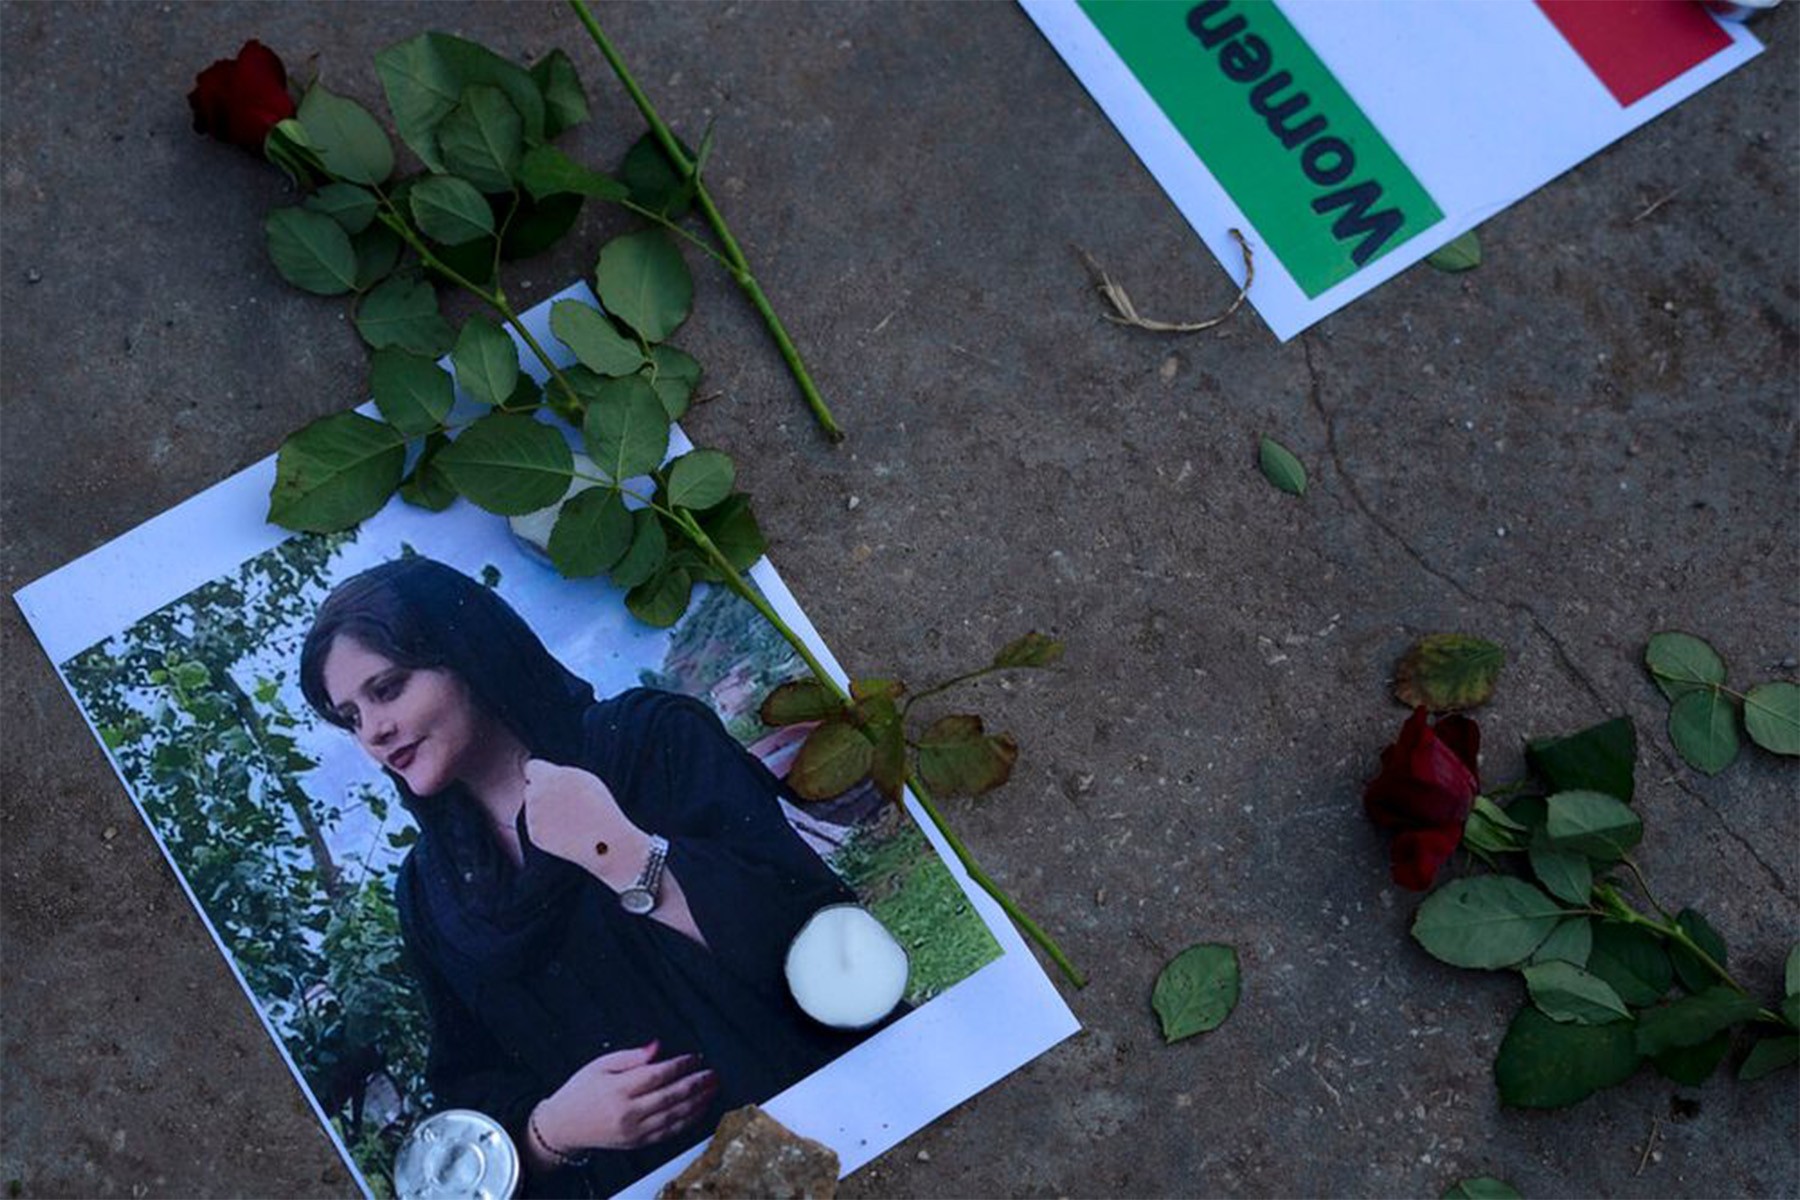 حقیقت یاب سازمان ملل مرگ مهسا امینی در ایران را غیر قانونی دانست و محکوم کرد